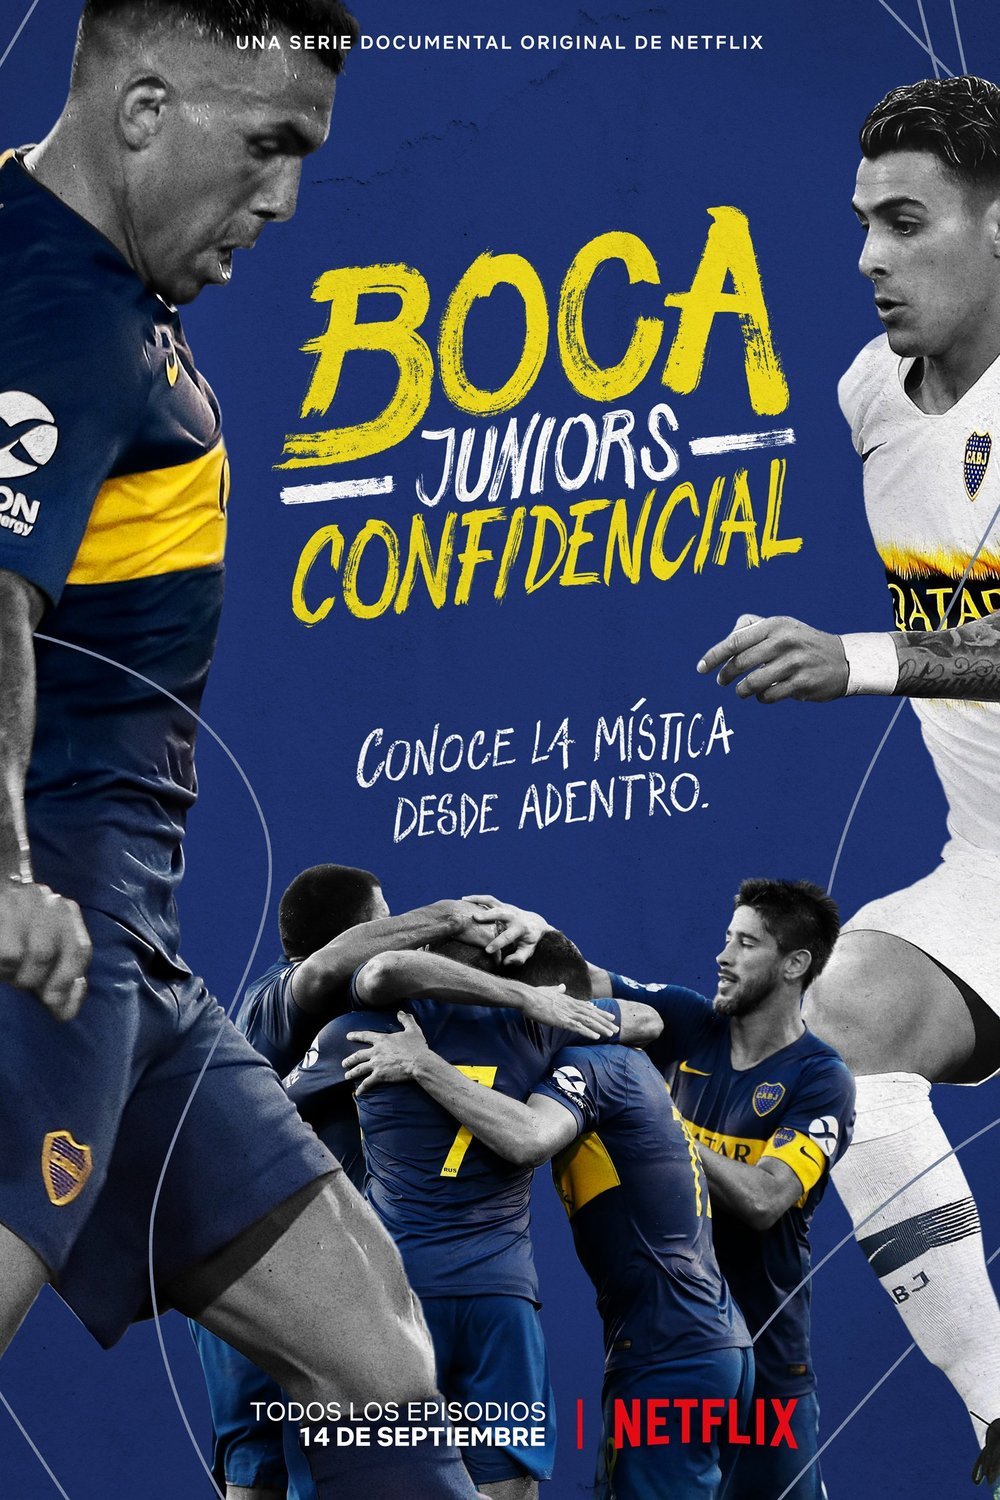 Spanish poster of the movie Boca Juniors Confidencial